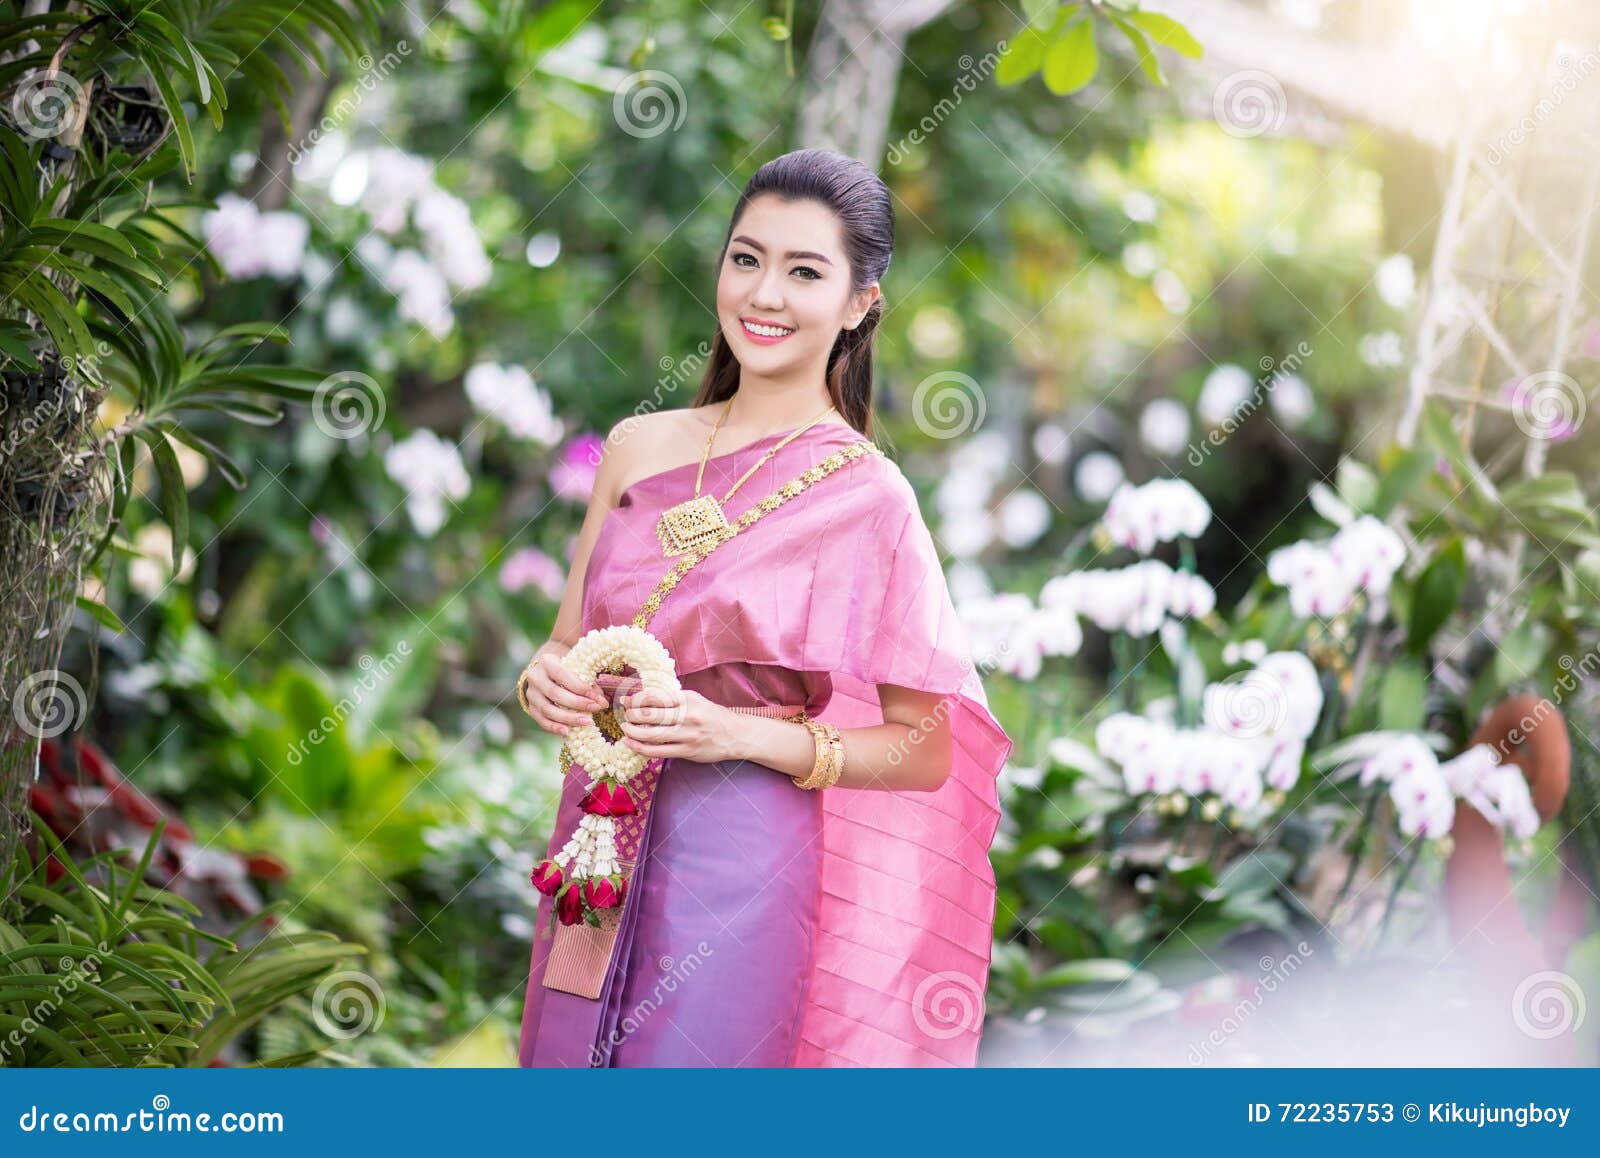 泰国传统服装的美丽的泰国女孩 库存图片. 图片 包括有 发芽, 迷住, 织品, 美女, 问候, 伙计, 女孩 - 69999733